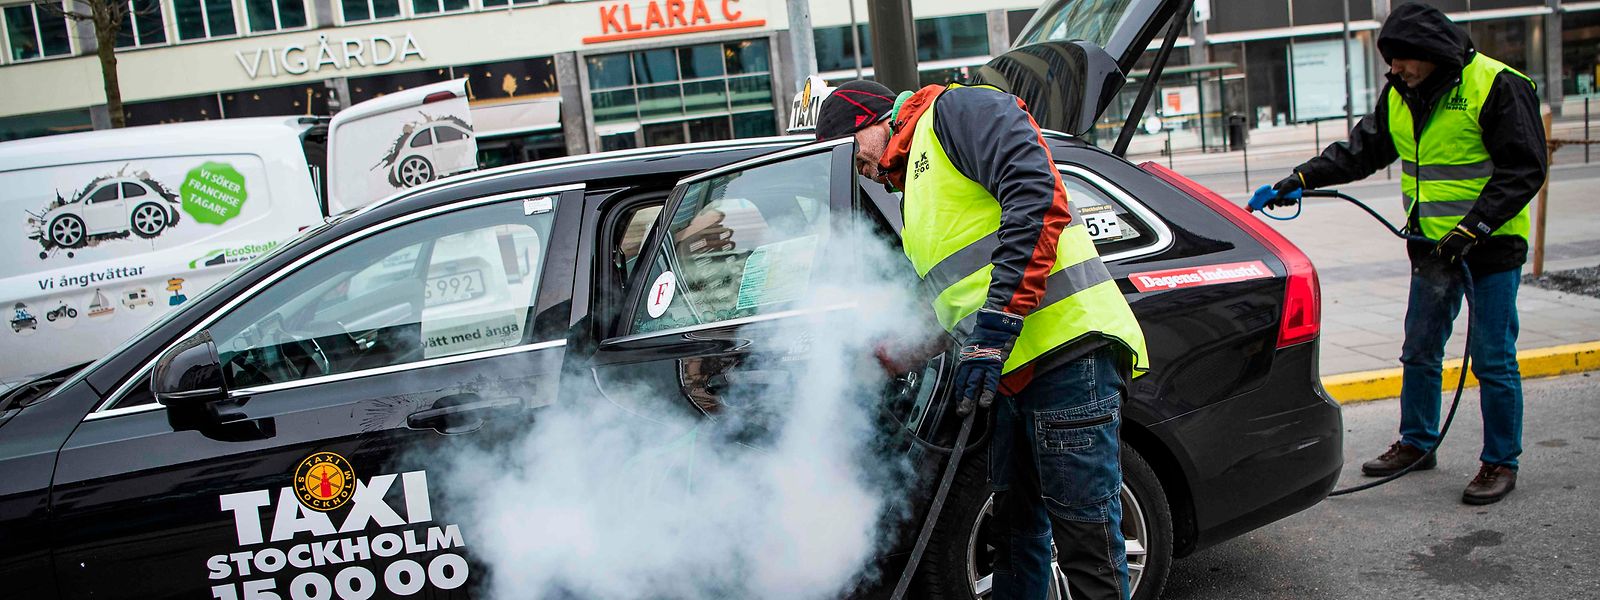 Reinigungskräfte in der schwedischen Hauptstadt Stockholm desinfizieren ein Taxi. Trotz der Verbreitung des Virus, bleiben Restaurants und Geschäfte weiterhin geöffnet.